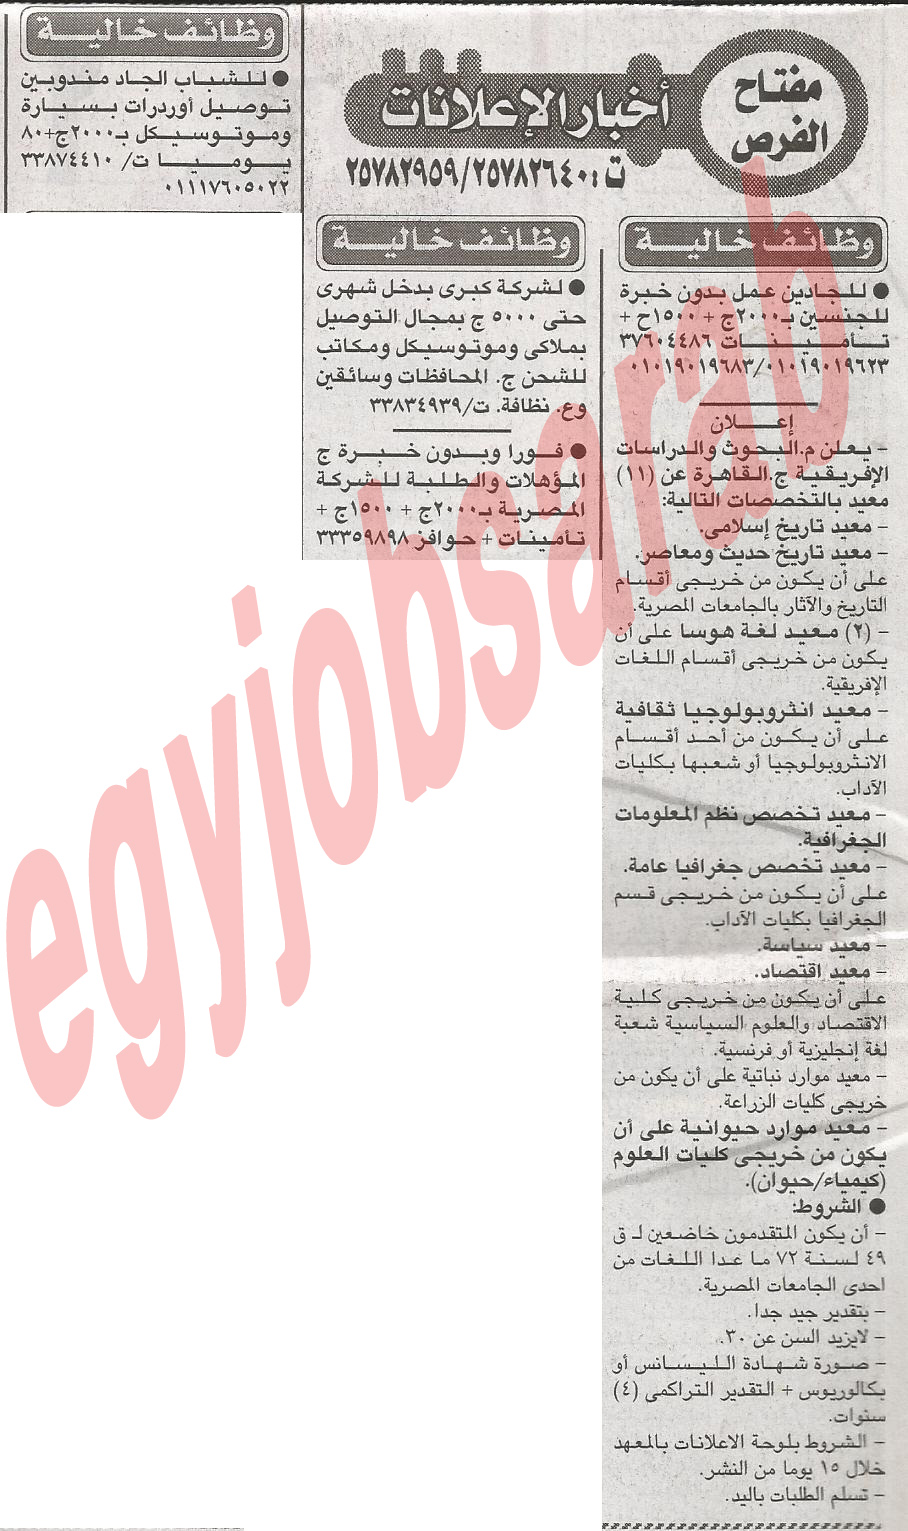 وظائف وفرص عمل جريدة الاخبار الثلاثاء 4/12/2012 - اعلانات مصر %D8%A7%D9%84%D8%A7%D8%AE%D8%A8%D8%A7%D8%B1+1